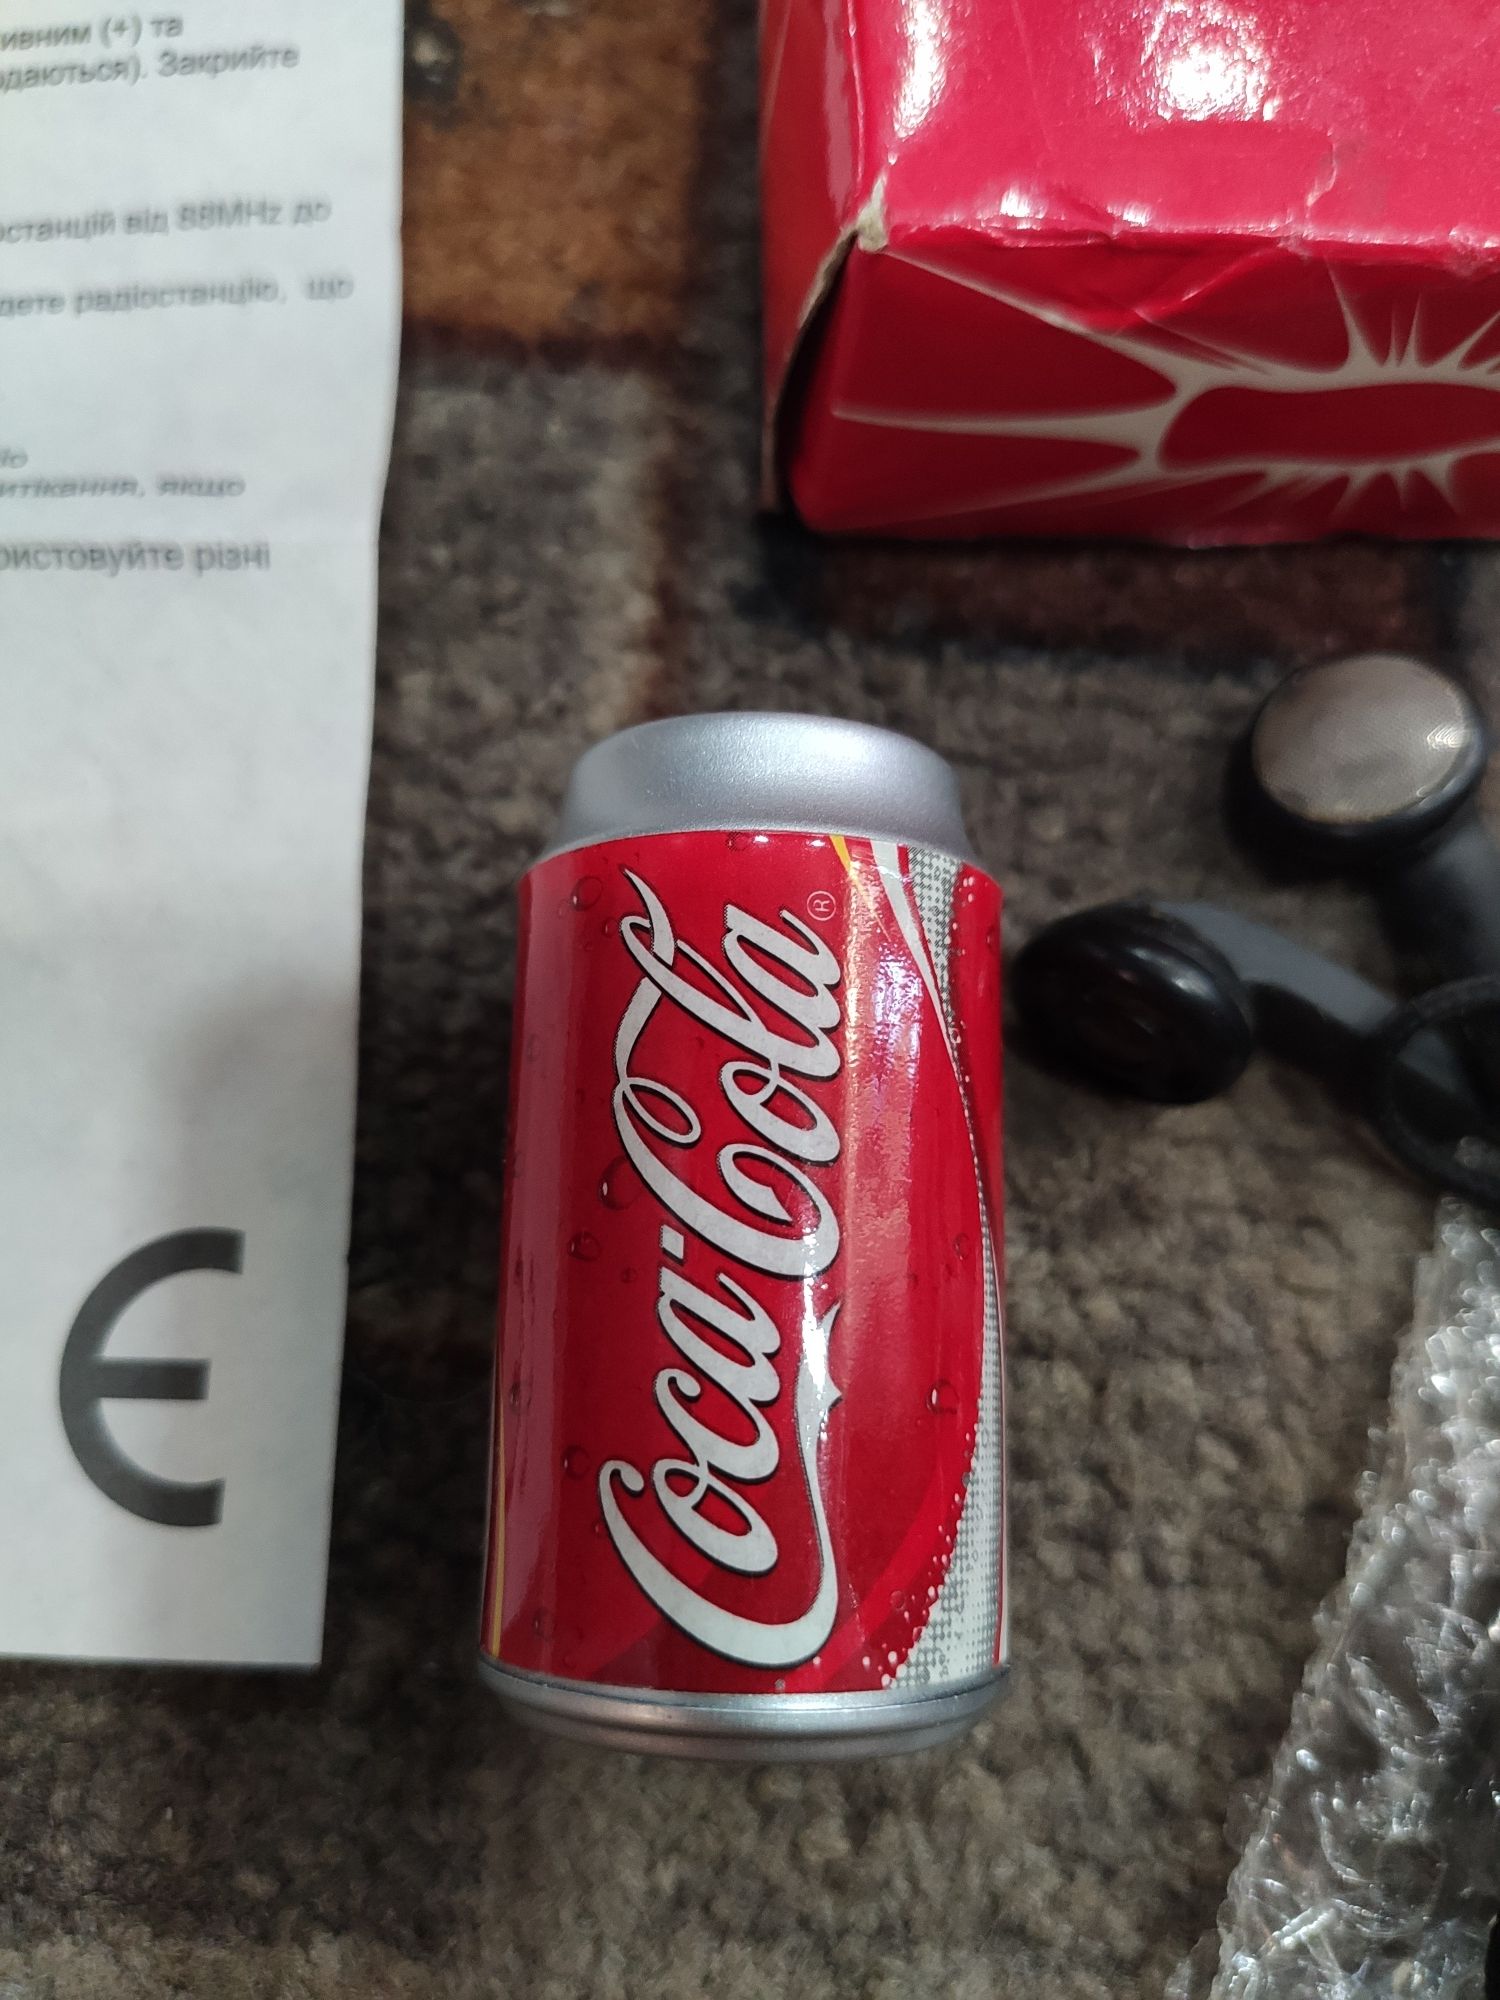 Плеер -радио Coca cola почти винтаж